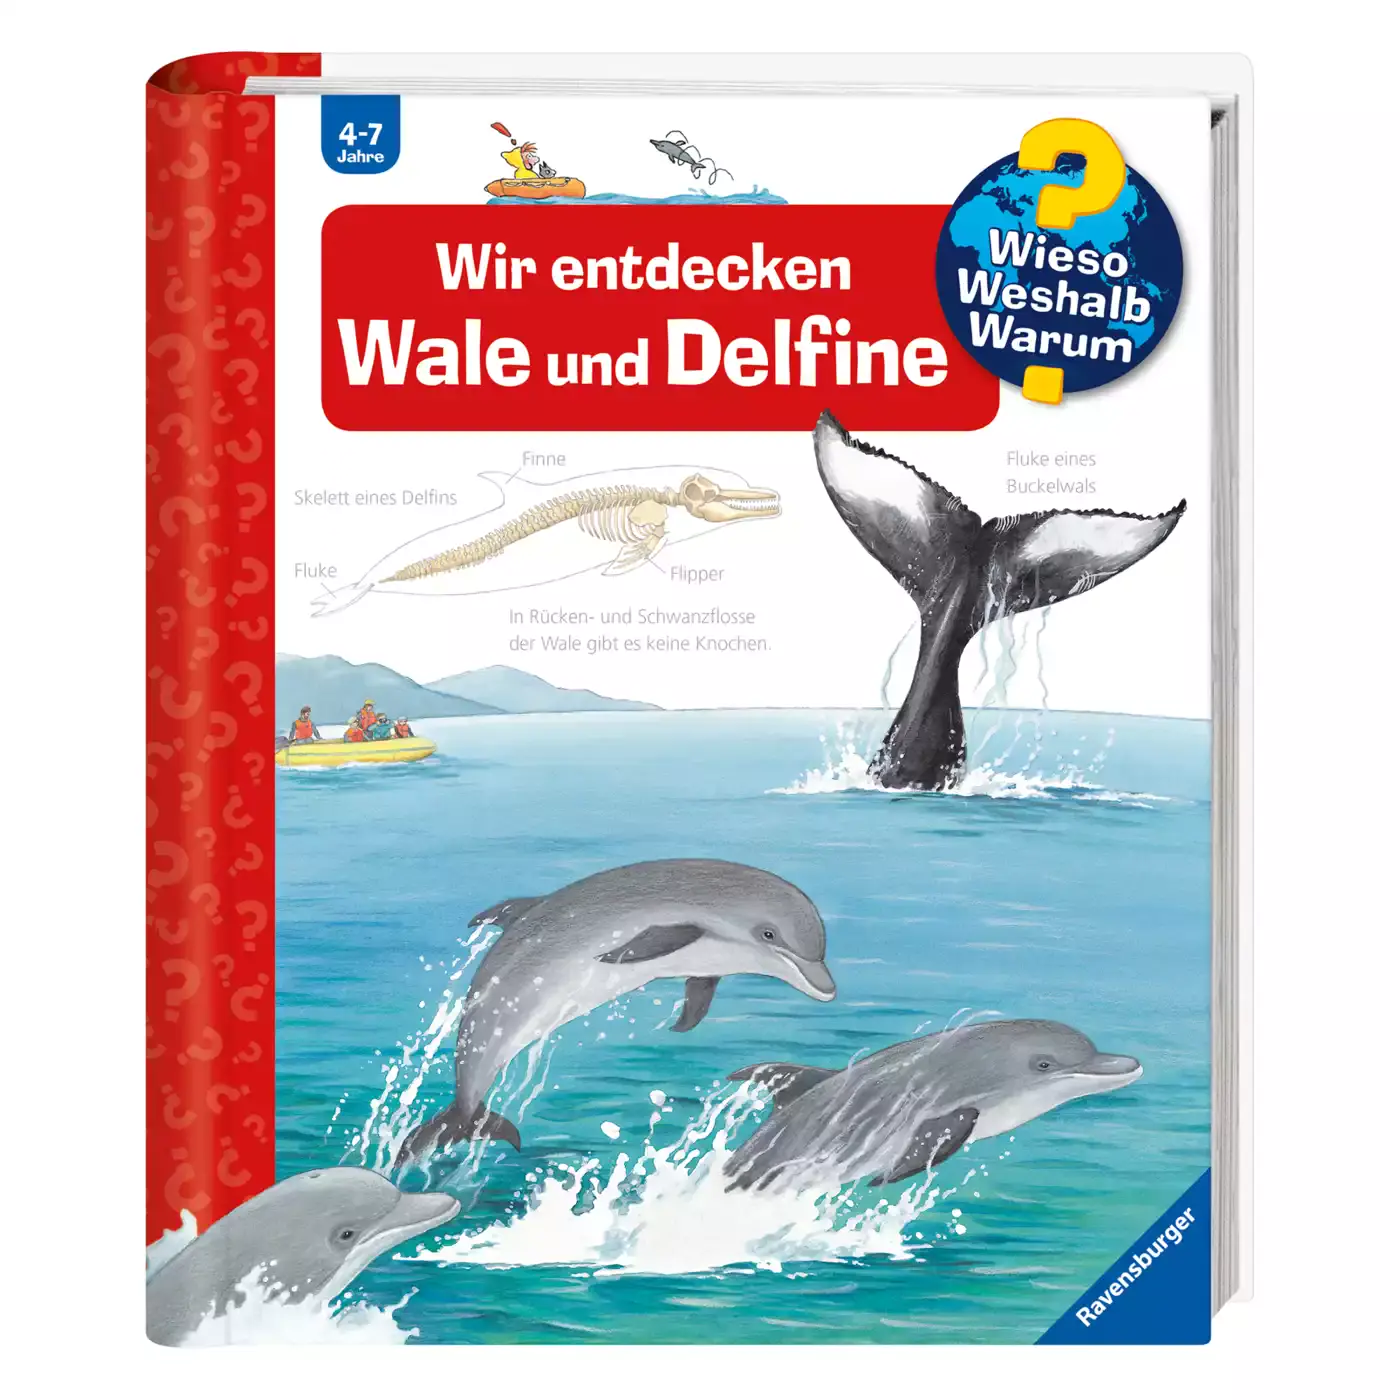 WWW Wir entdecken Wale und Delfine Ravensburger 2000530008307 1